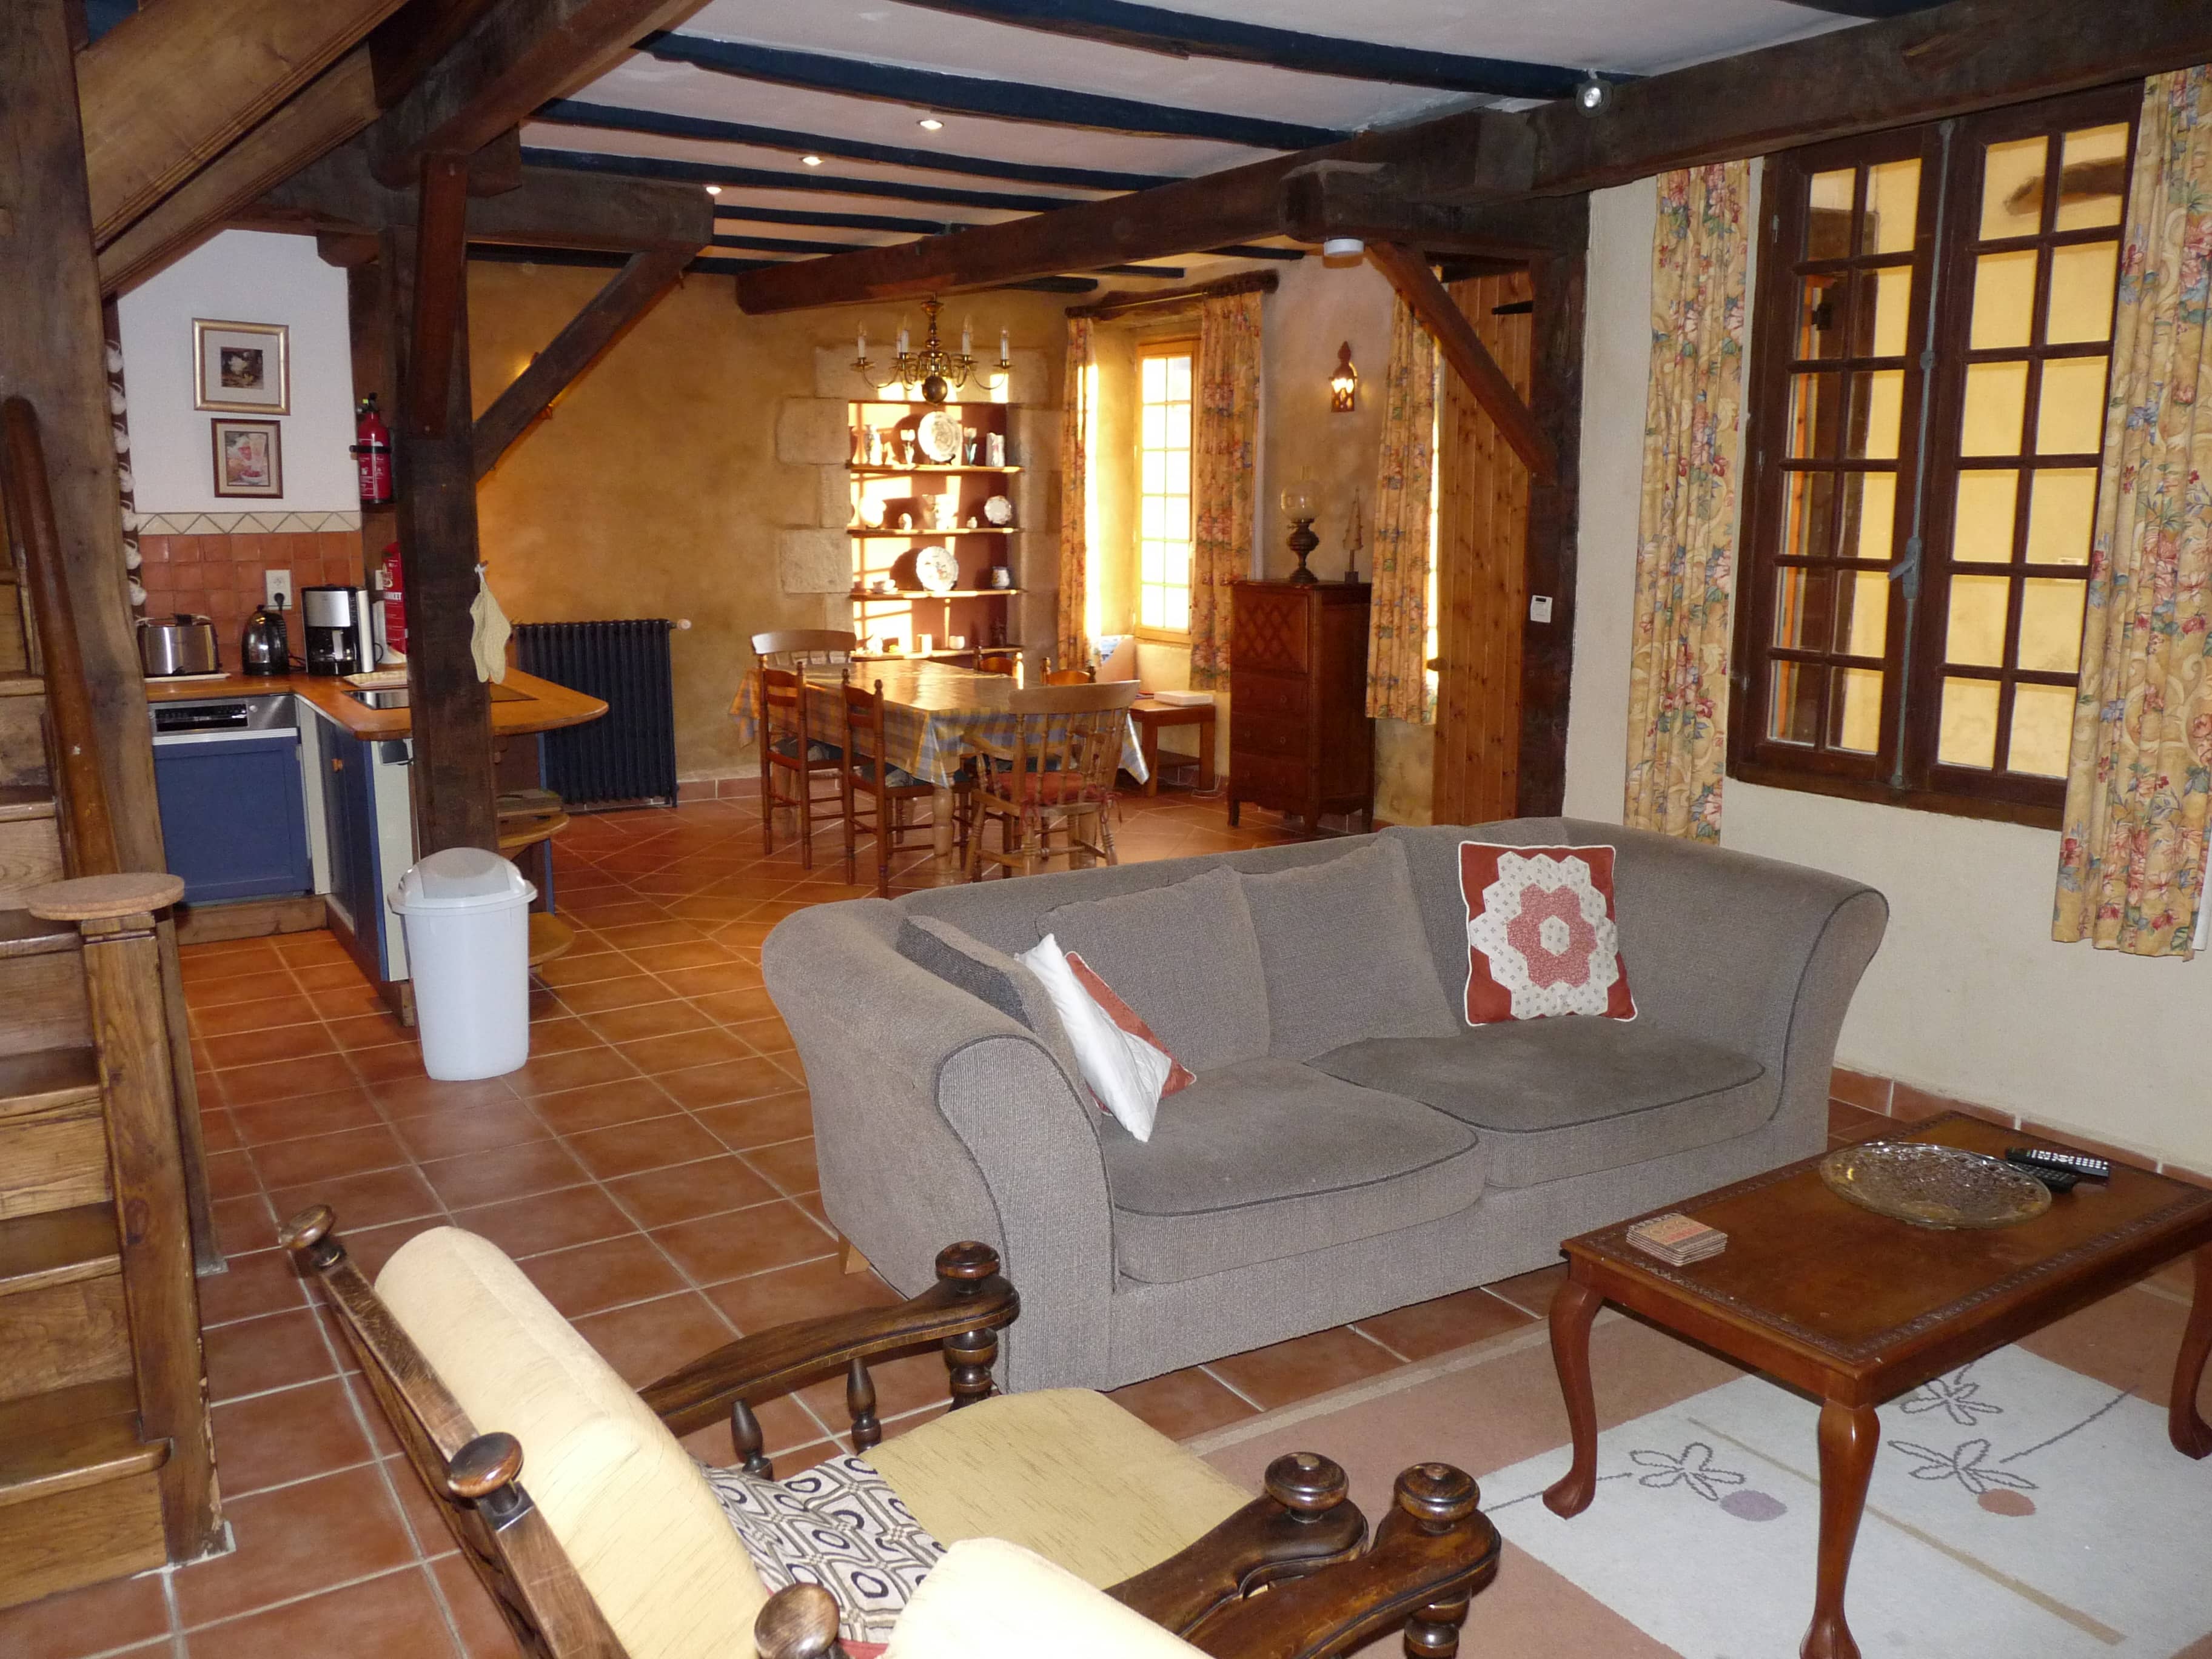 Confortable salon du gîte La Julerie en Bretagne, France, avec vue sur la nature environnante et équipé de meubles modernes. Idéal pour se détendre après une journée de visites en Bretagne.